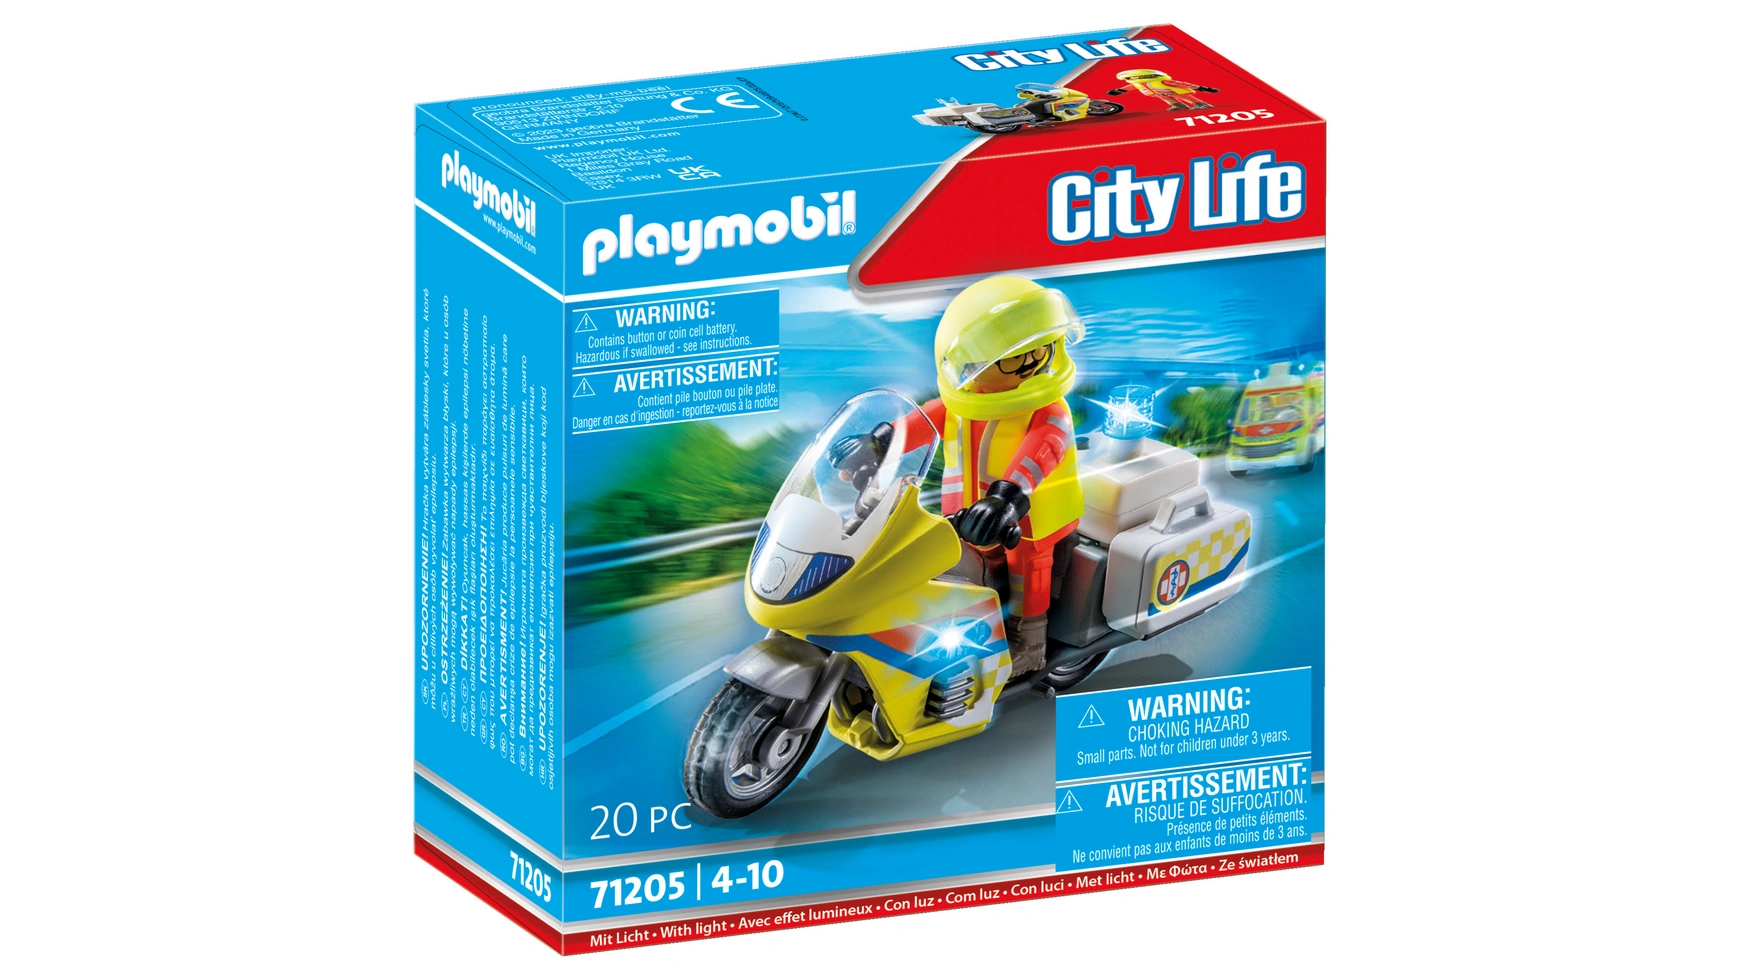 врач скорой помощи City life мотоцикл врача скорой помощи с мигалкой Playmobil